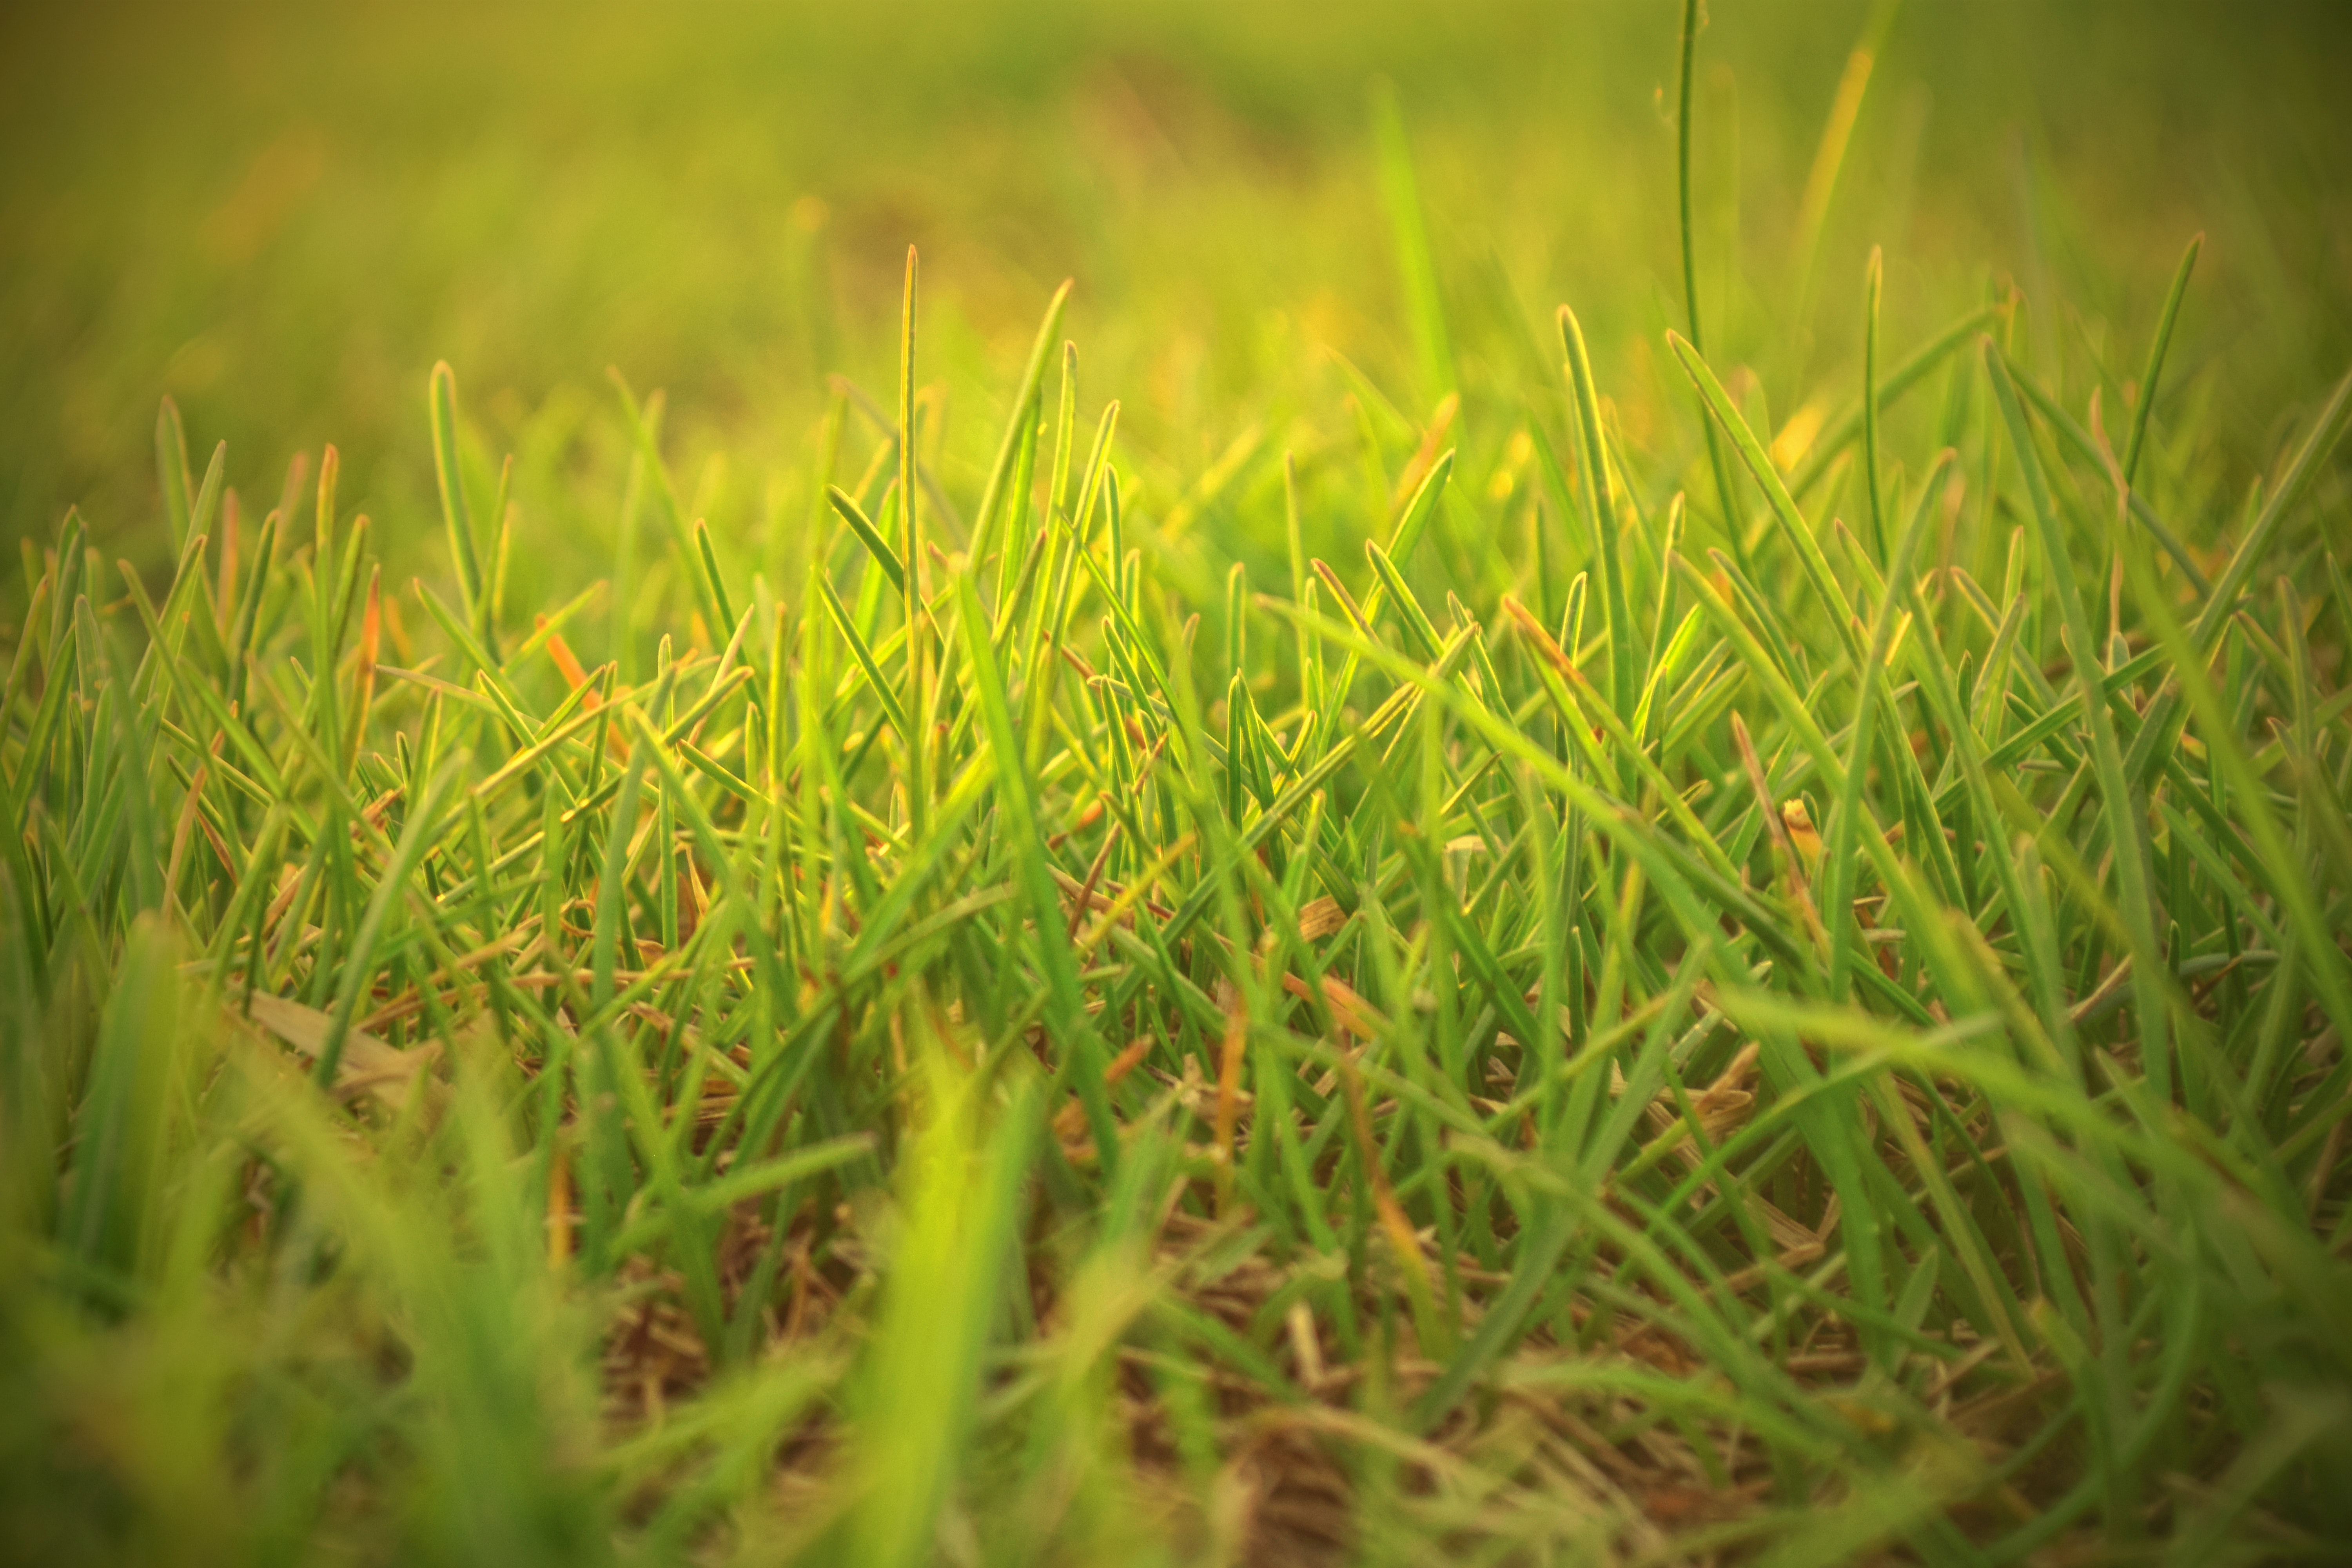 Green Grass Field, Depth of field, Field, Grass, Lawn, HQ Photo